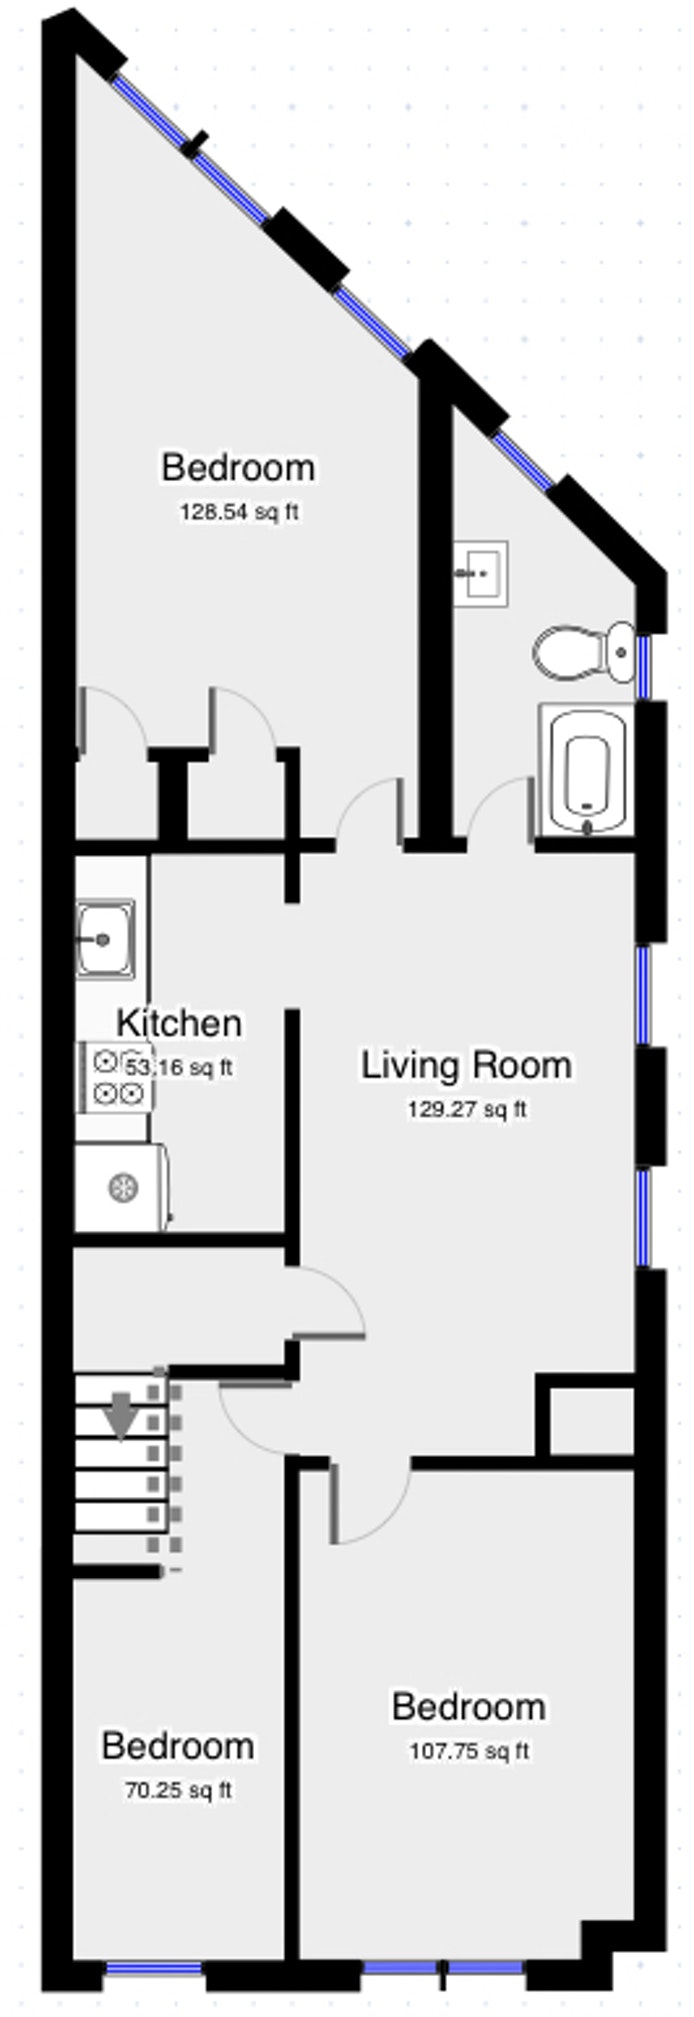 Floorplan for 261 Rockaway Avenue, 2